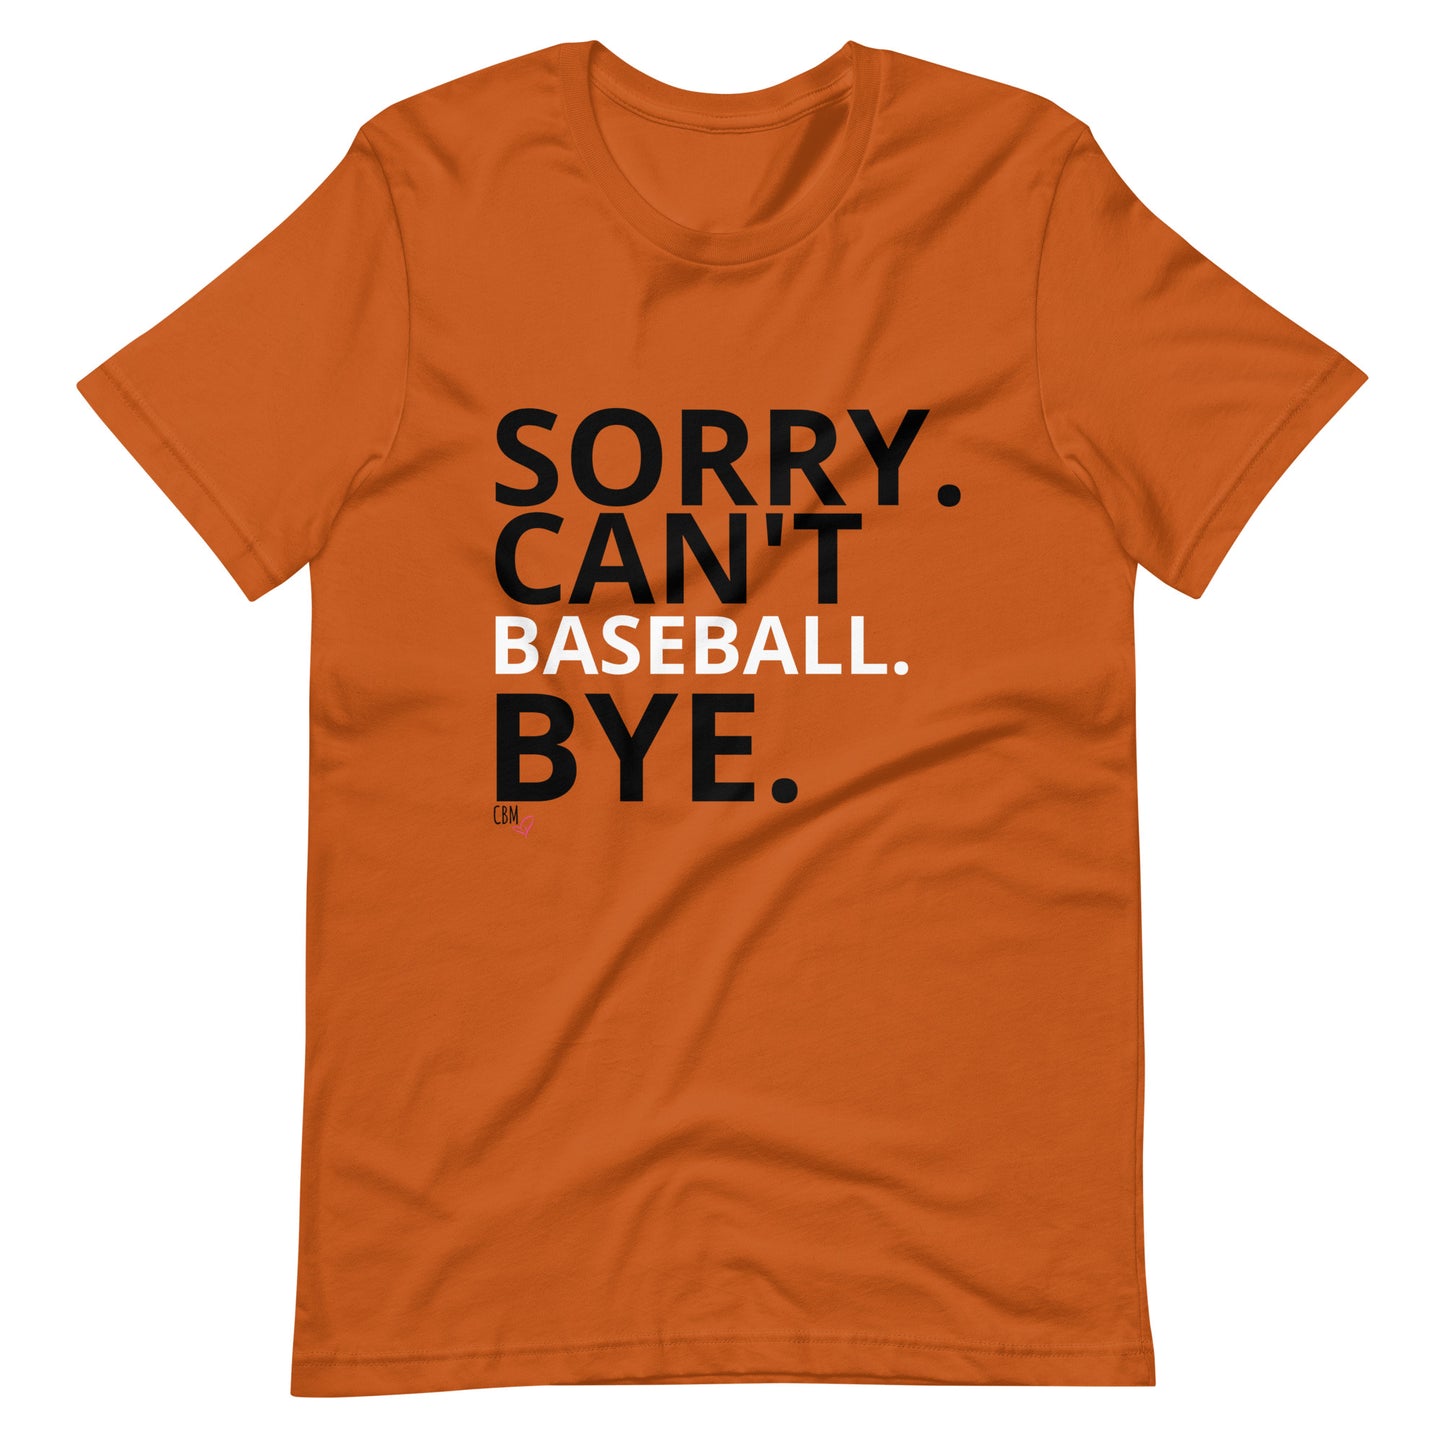 Sorry. Can't. Baseball. Bye